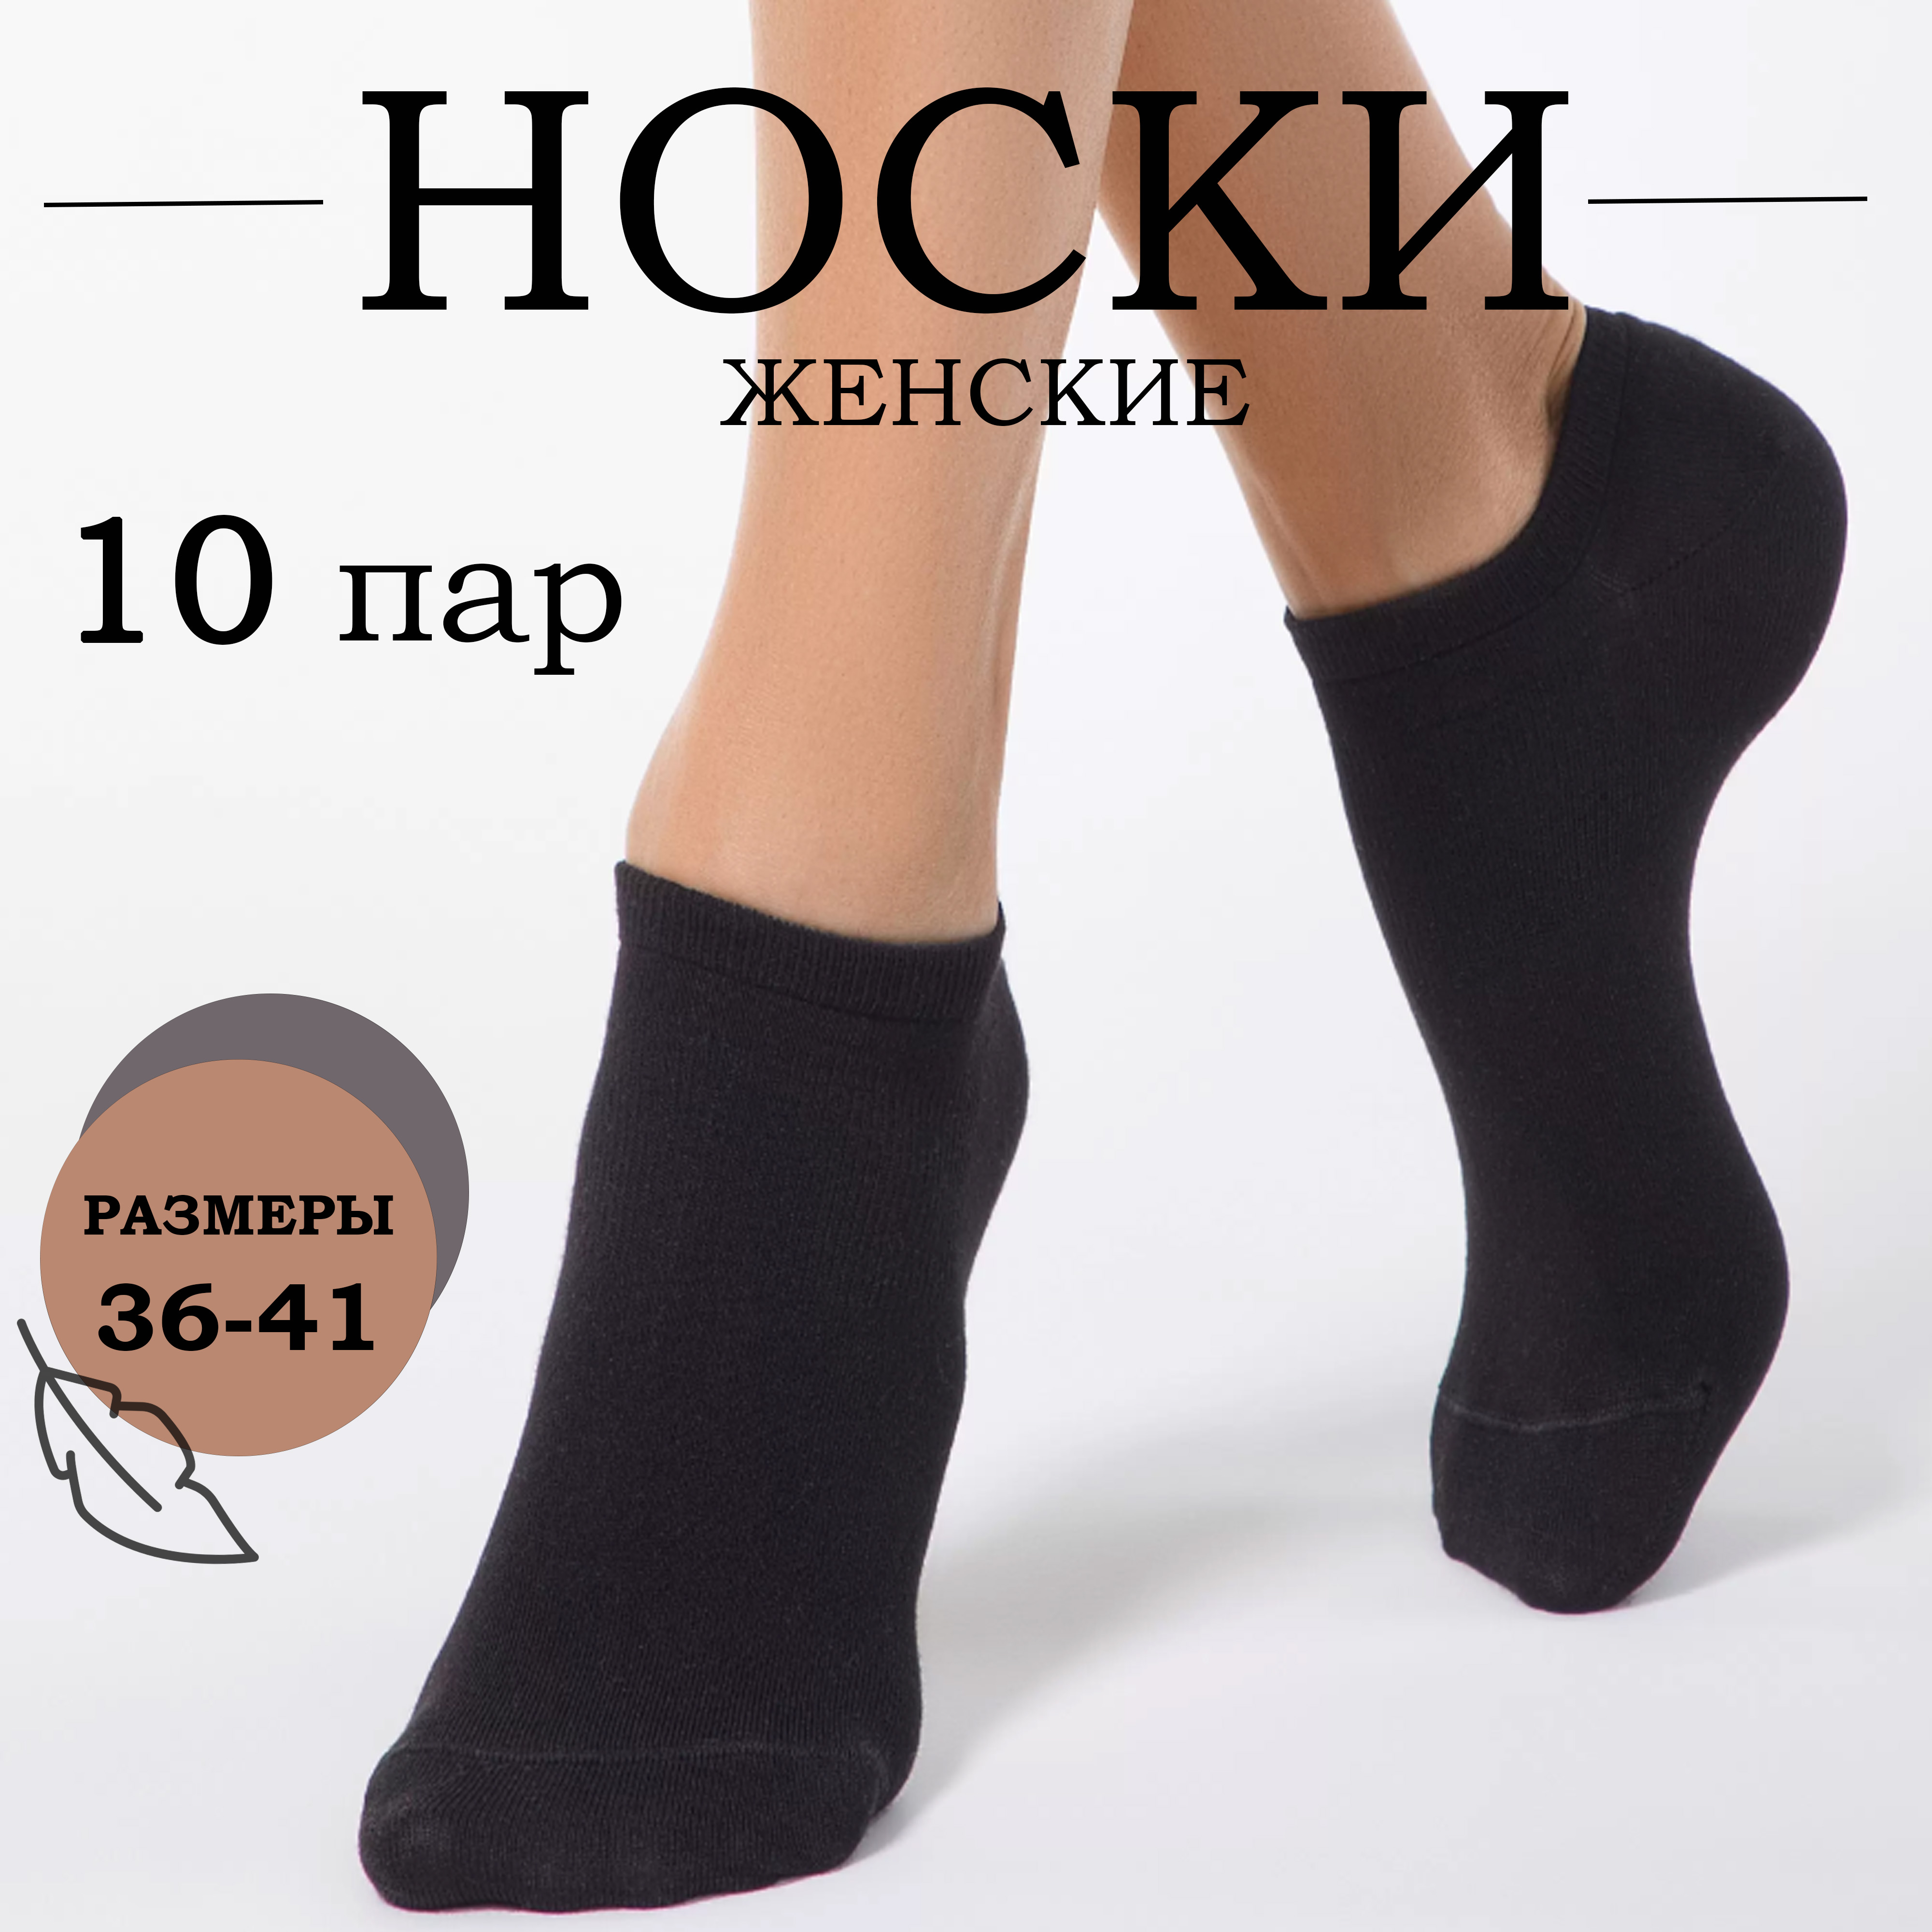 Комплект носков женских Ланмень Укороченные черных 36-41, 10 пар